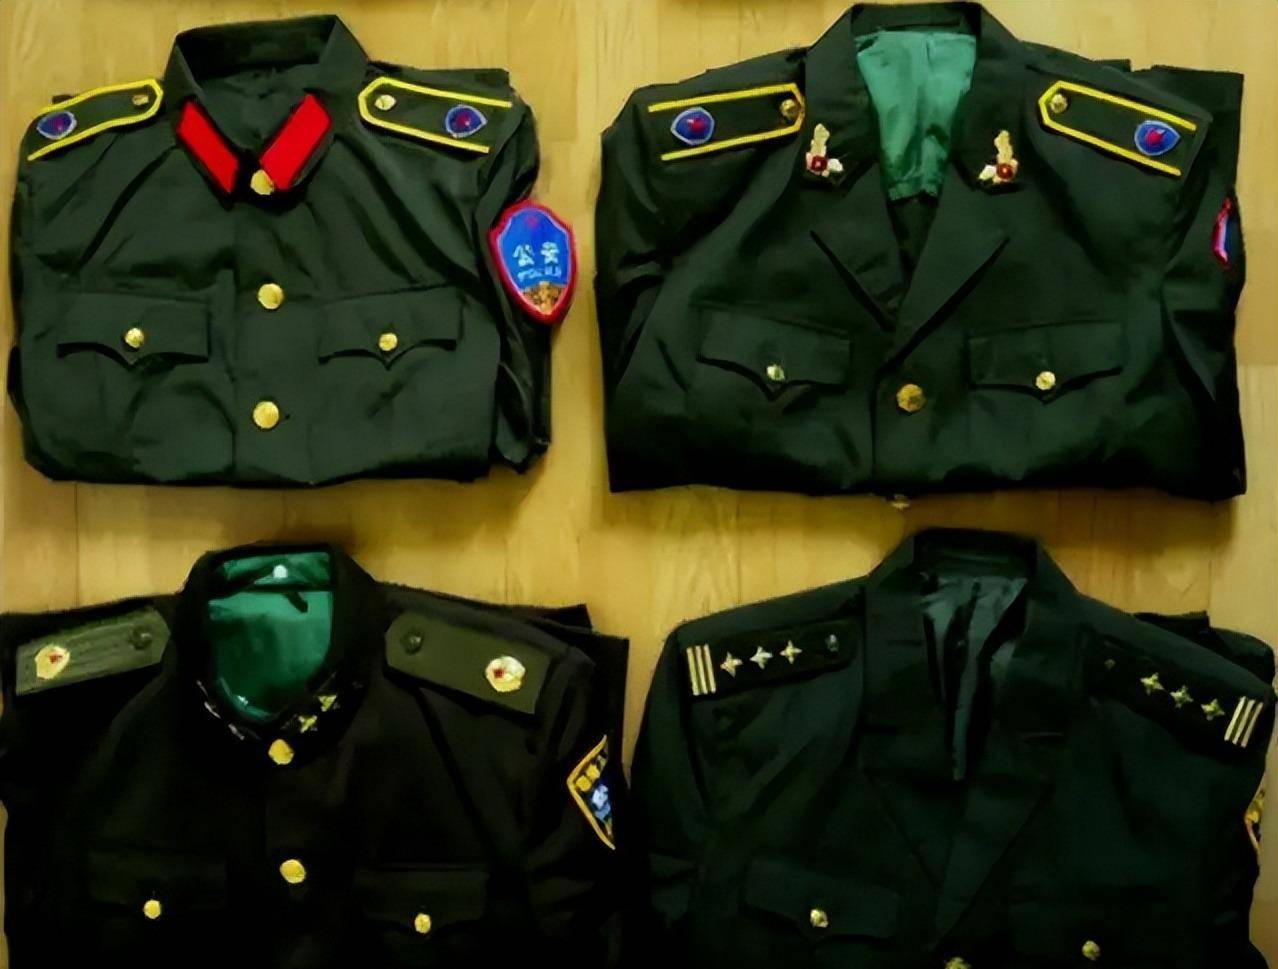 中国警察队伍,换发了8种警服,1995年,为何撤销领章?